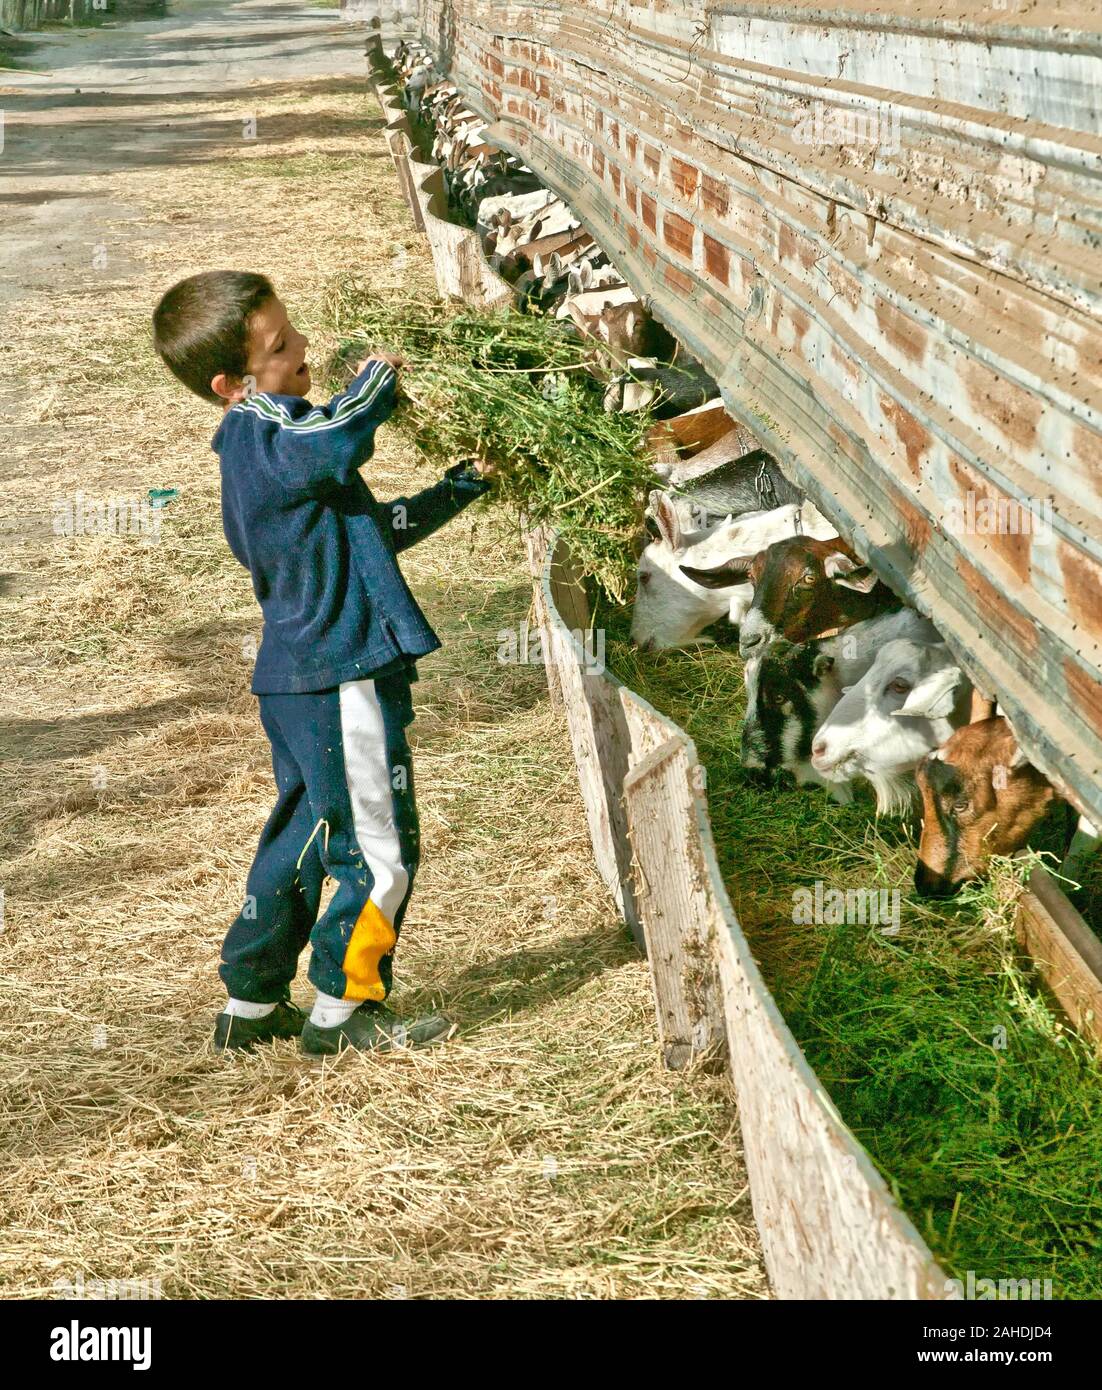 Granja de productos lácteos de cabra, de siete años de edad materna el heno de alfalfa para cabras lecheras, comedero, "Capra hircus angagnus'. Foto de stock